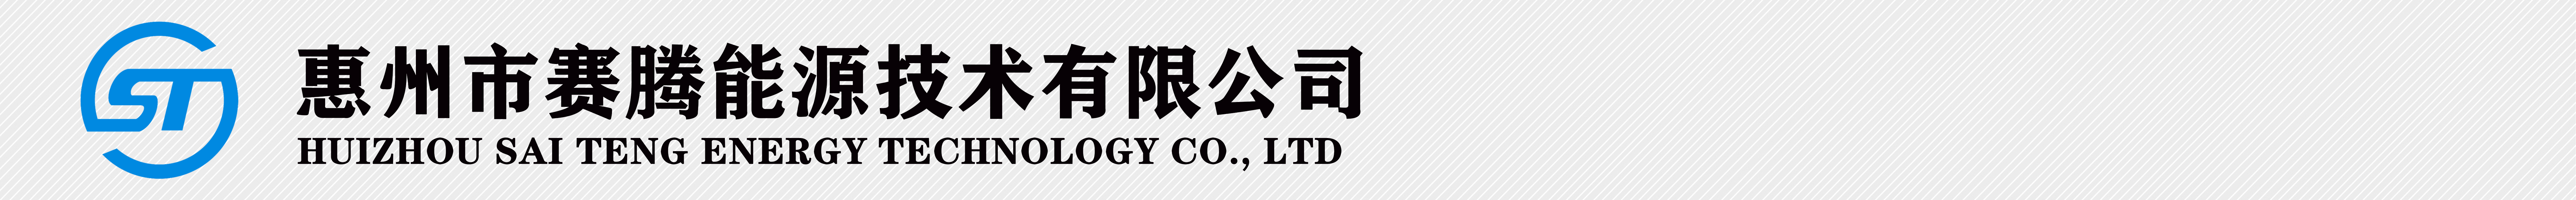 惠州市賽騰能源技術有限公司